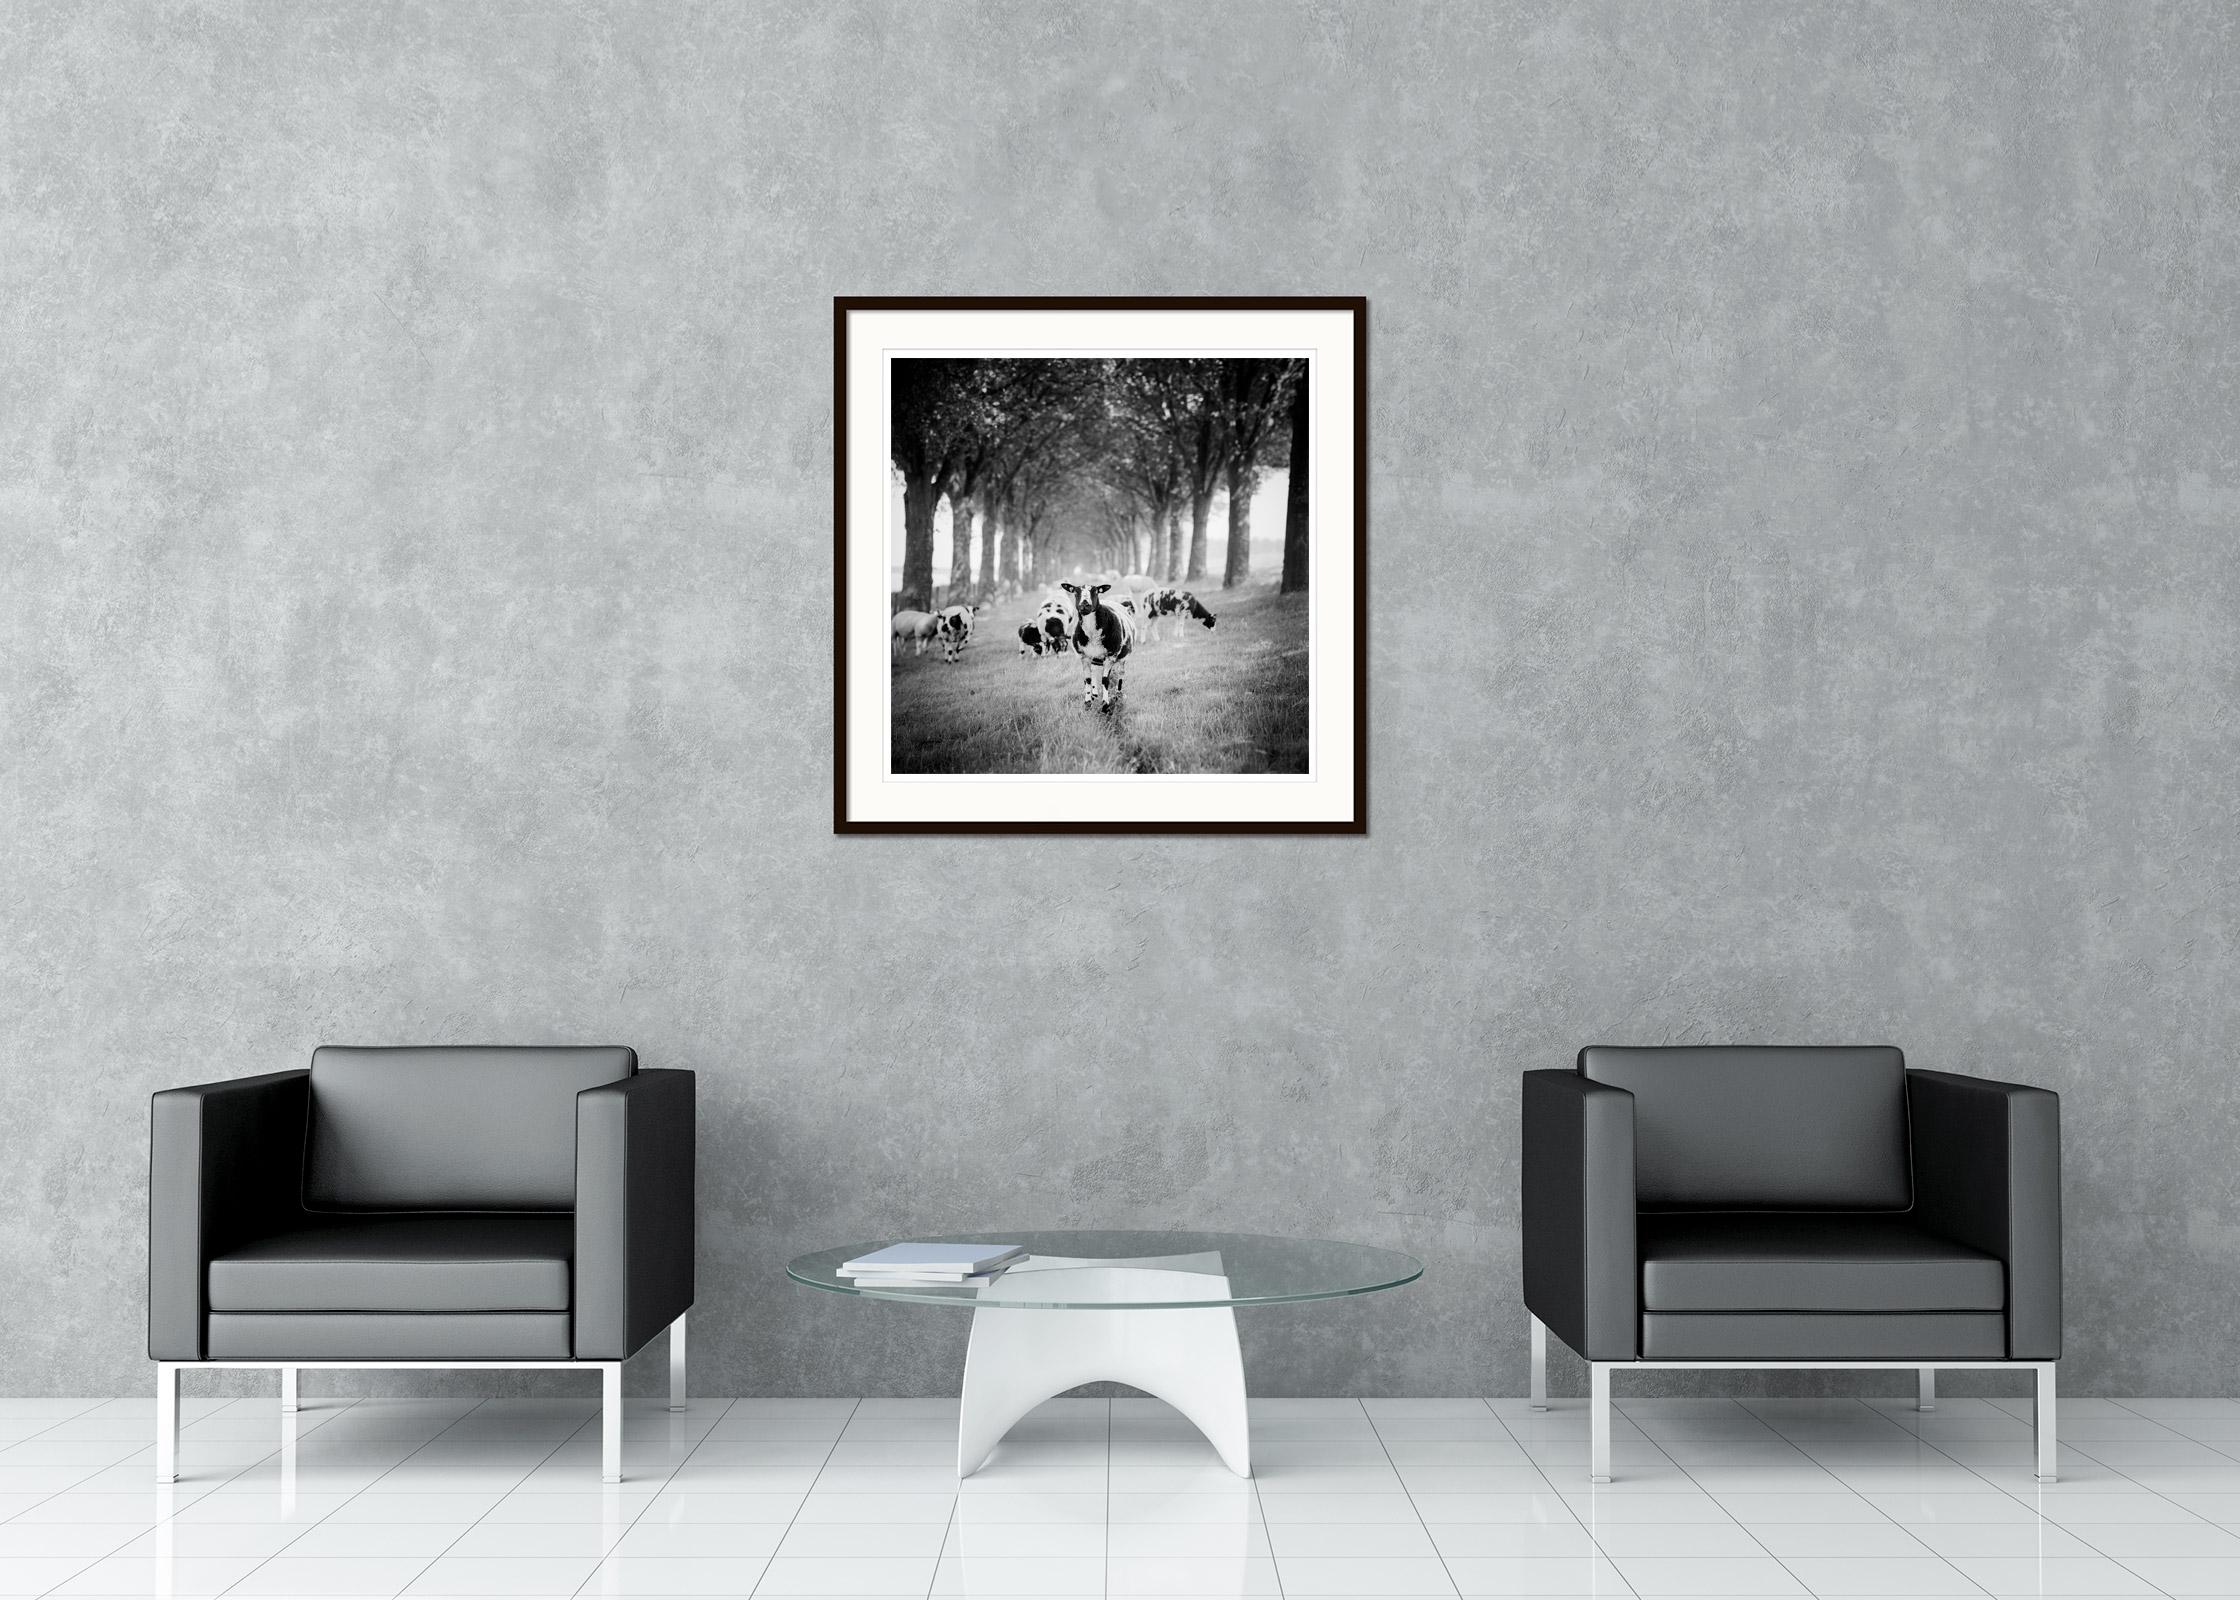 Schwarz-Weiß-Panorama-Landschaftsfotografie. Viele Schafe in einer schönen Baumallee in den Niederlanden. Pigmenttintendruck, Auflage 9, signiert, betitelt, datiert und nummeriert vom Künstler. Mit Echtheitszertifikat. Bedruckt mit einem 4 cm